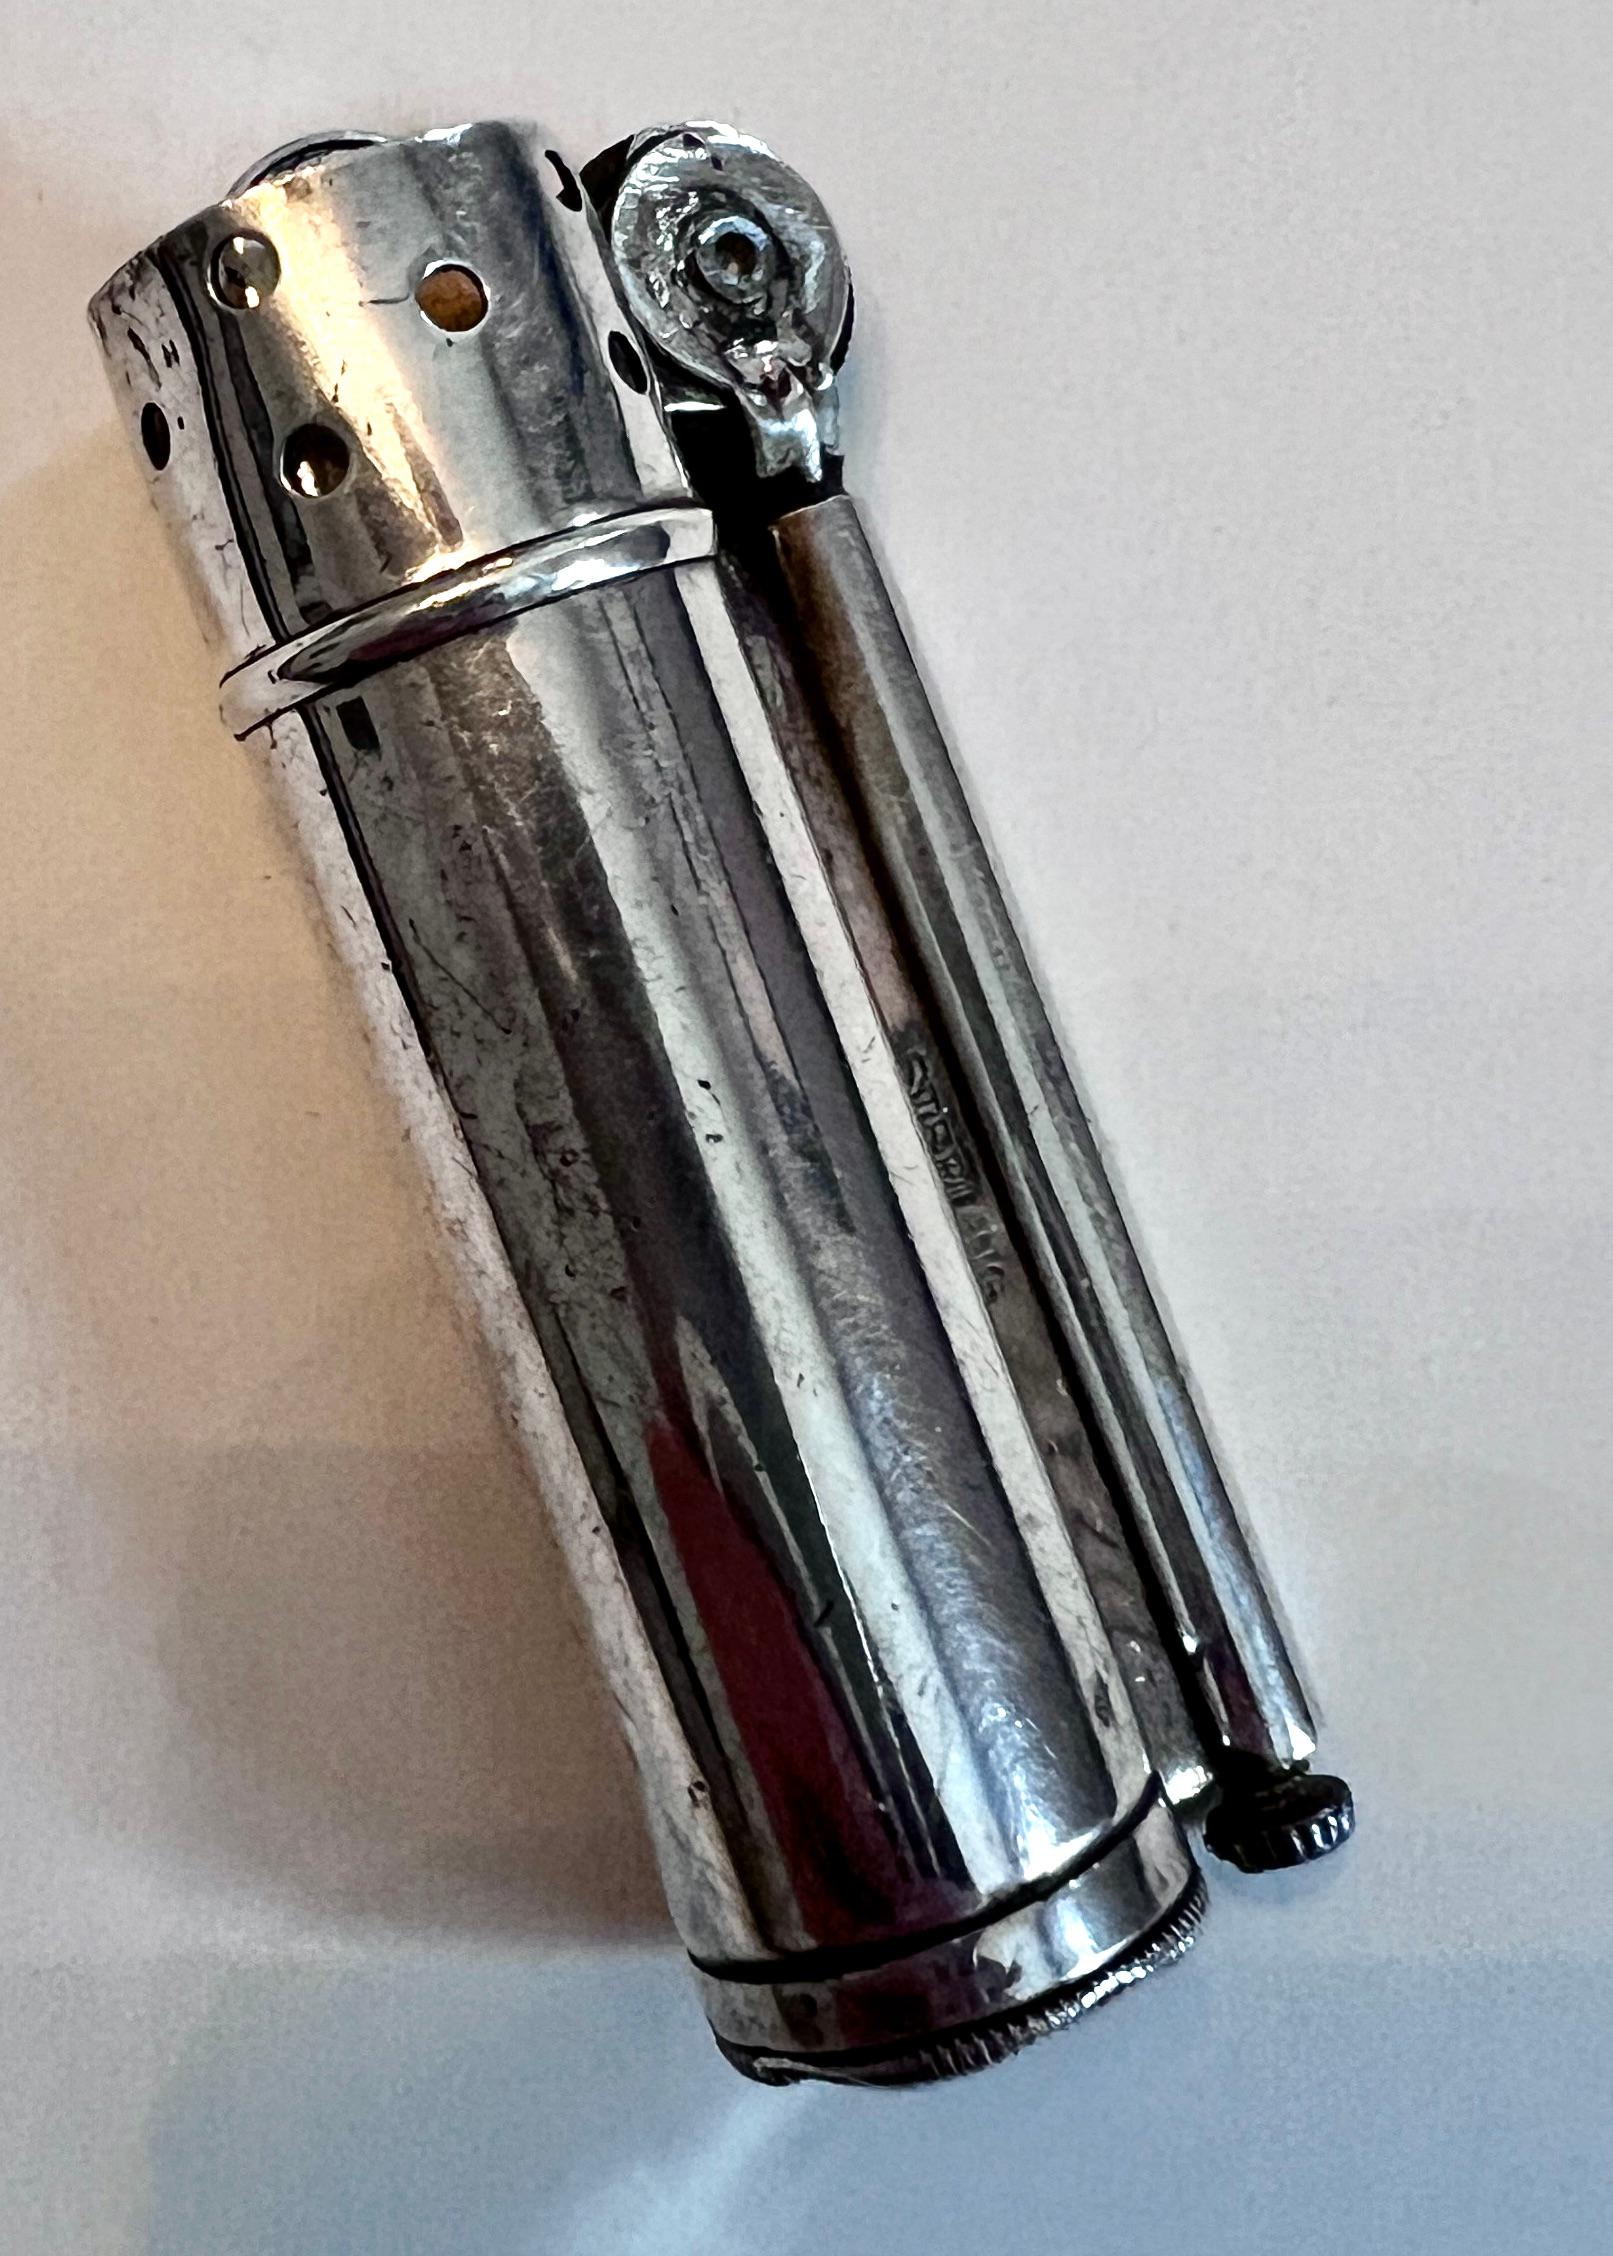 Sterling Silber Service Feuerzeug von Alfred Dunhill.  Das Feuerzeug wurde in den 1940er Jahren für Segler entworfen.  Das Stück ist Sterling gestempelt und wurde vollständig restauriert und funktioniert wunderbar.

Das Feuerzeug lässt sich leicht